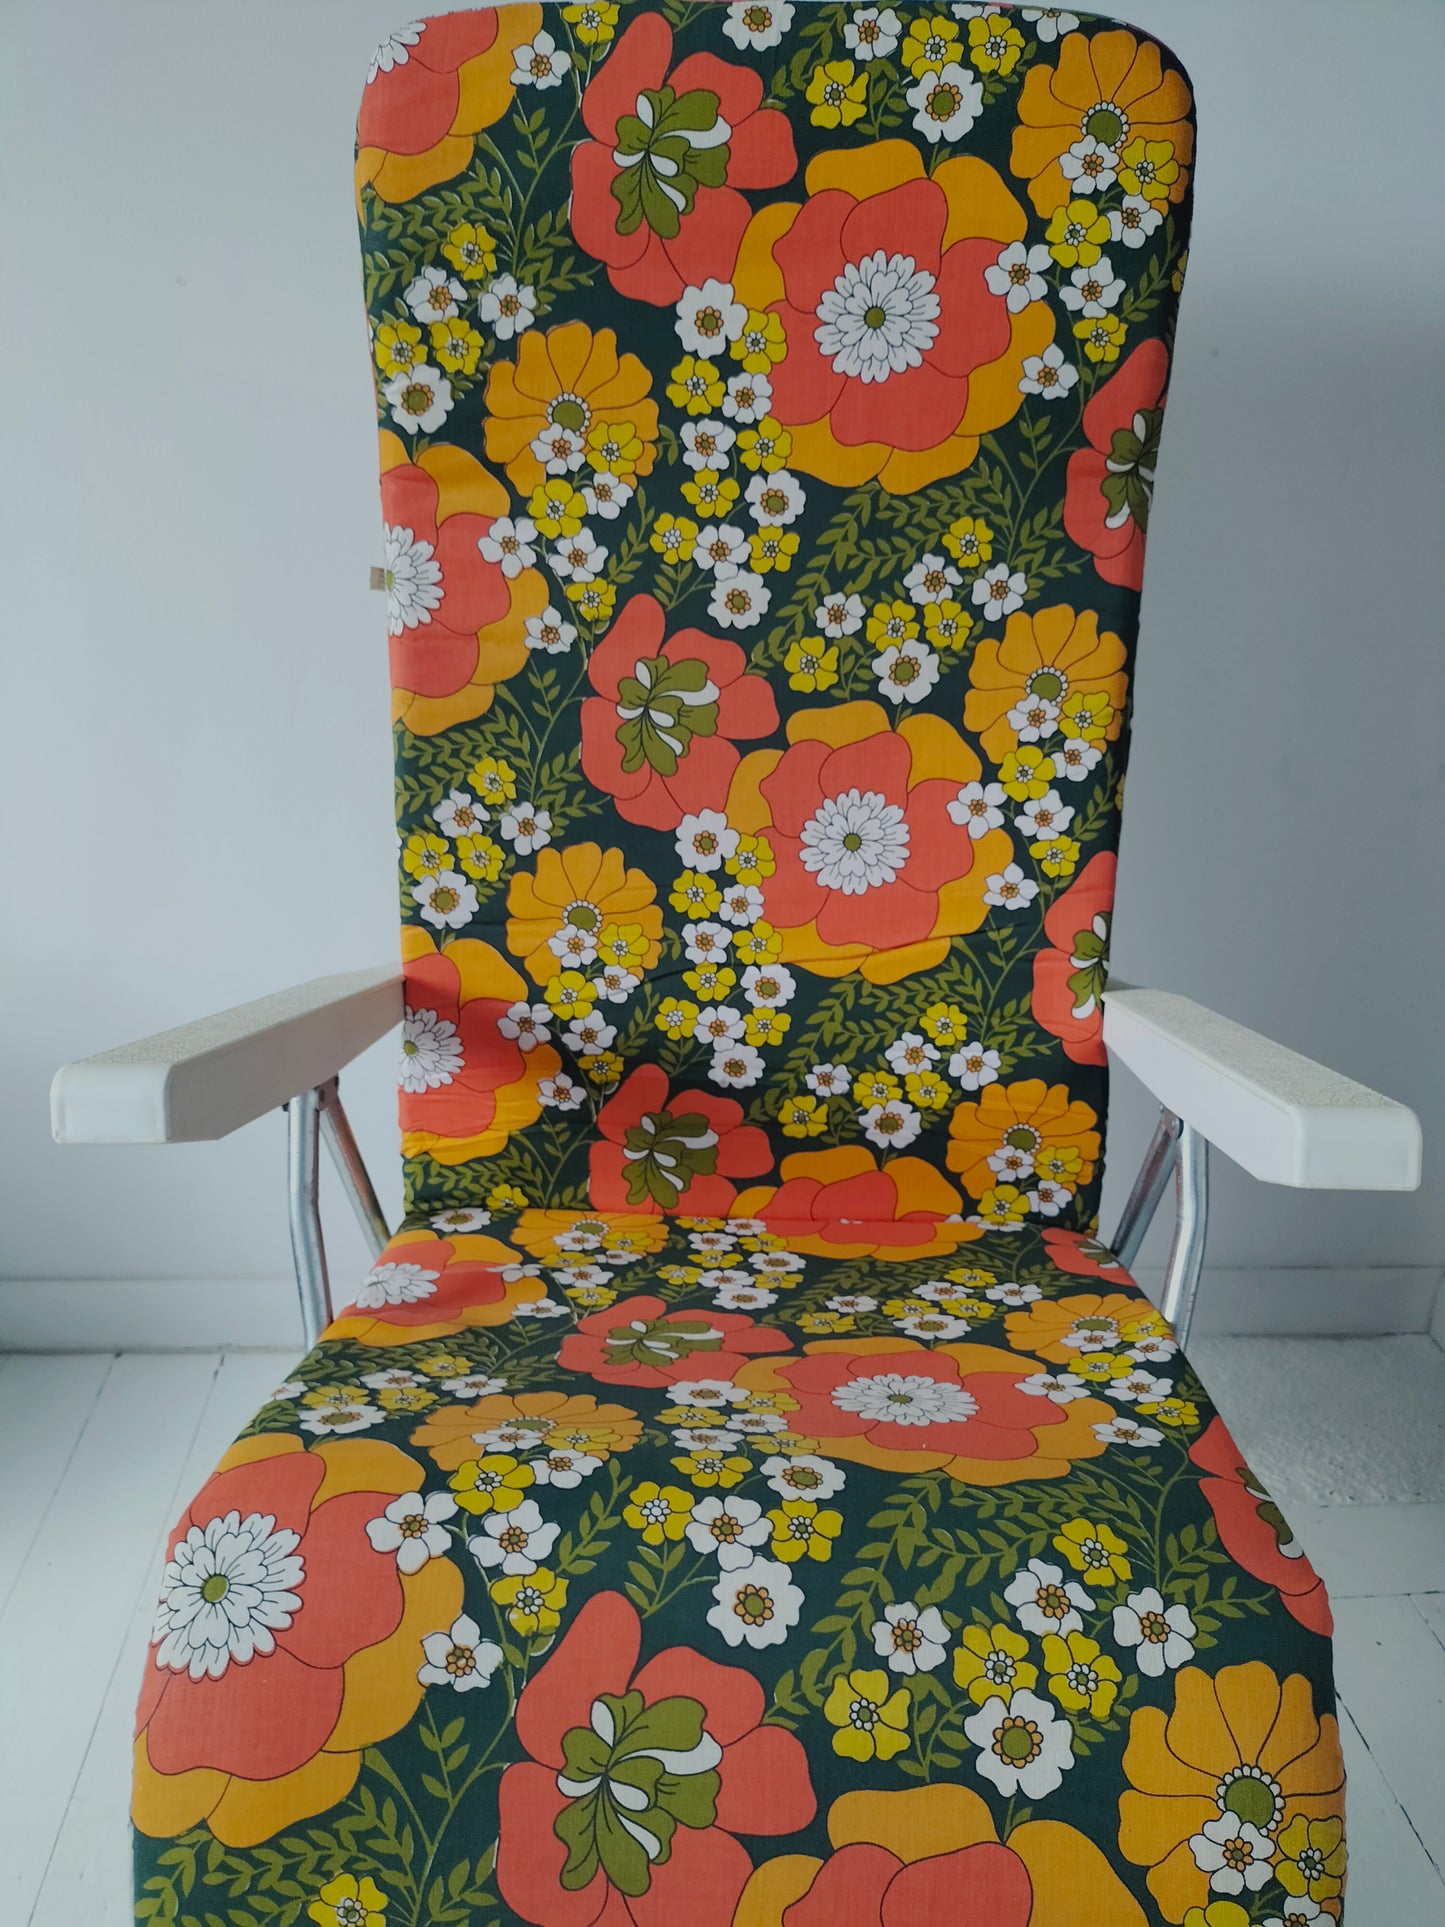 Bain de soleil/ fauteuil de jardin vintage Rinco